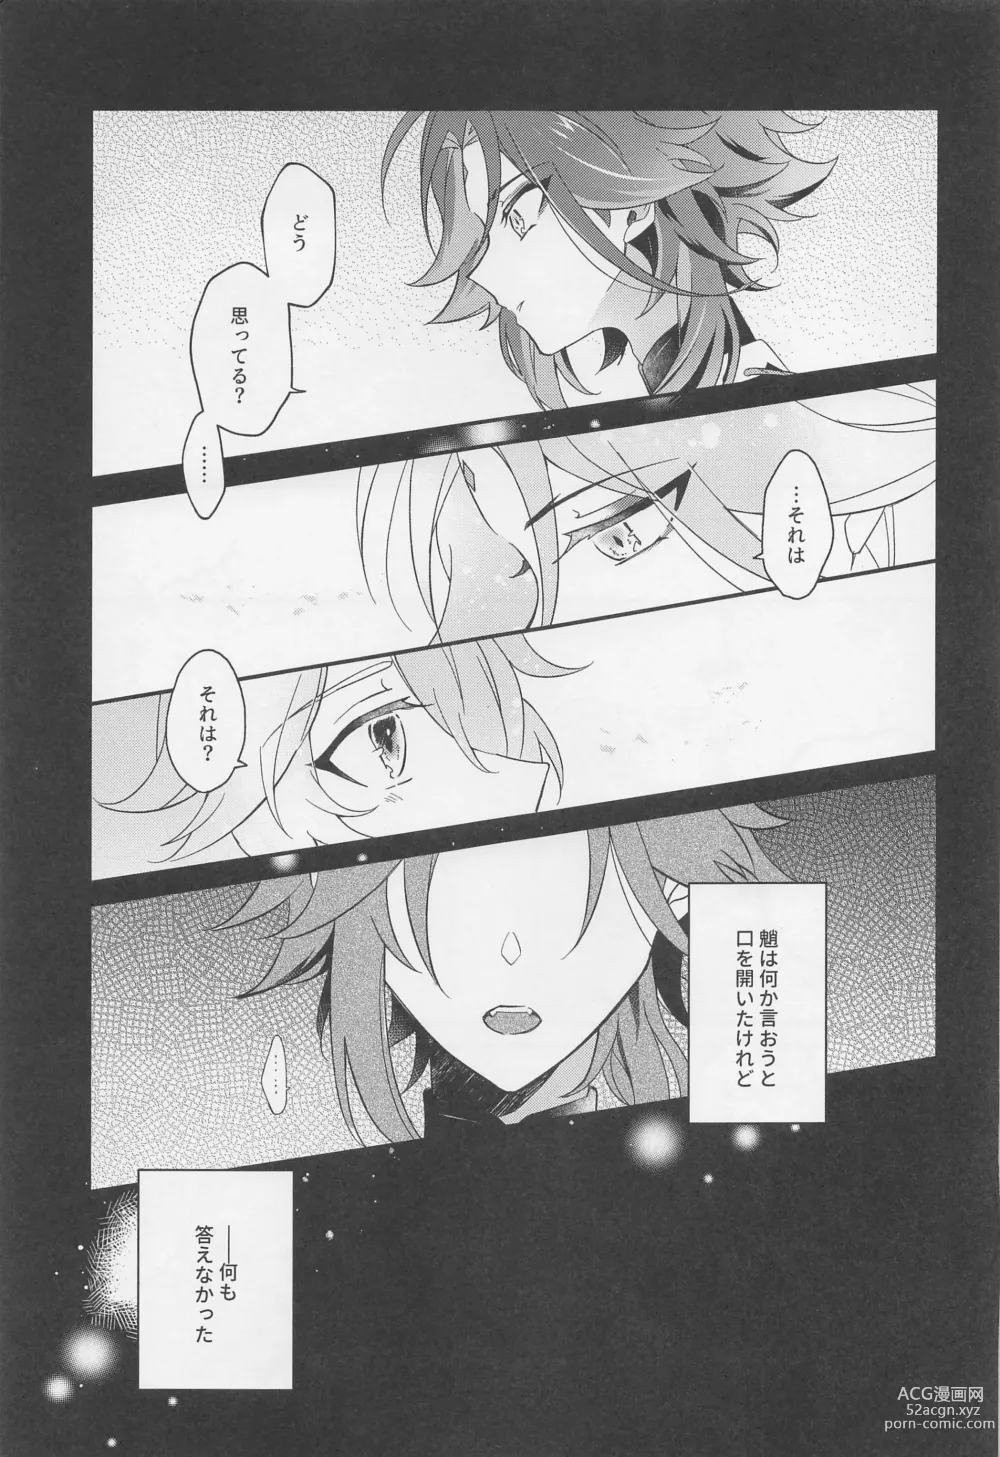 Page 6 of doujinshi Kimi o Wazurau